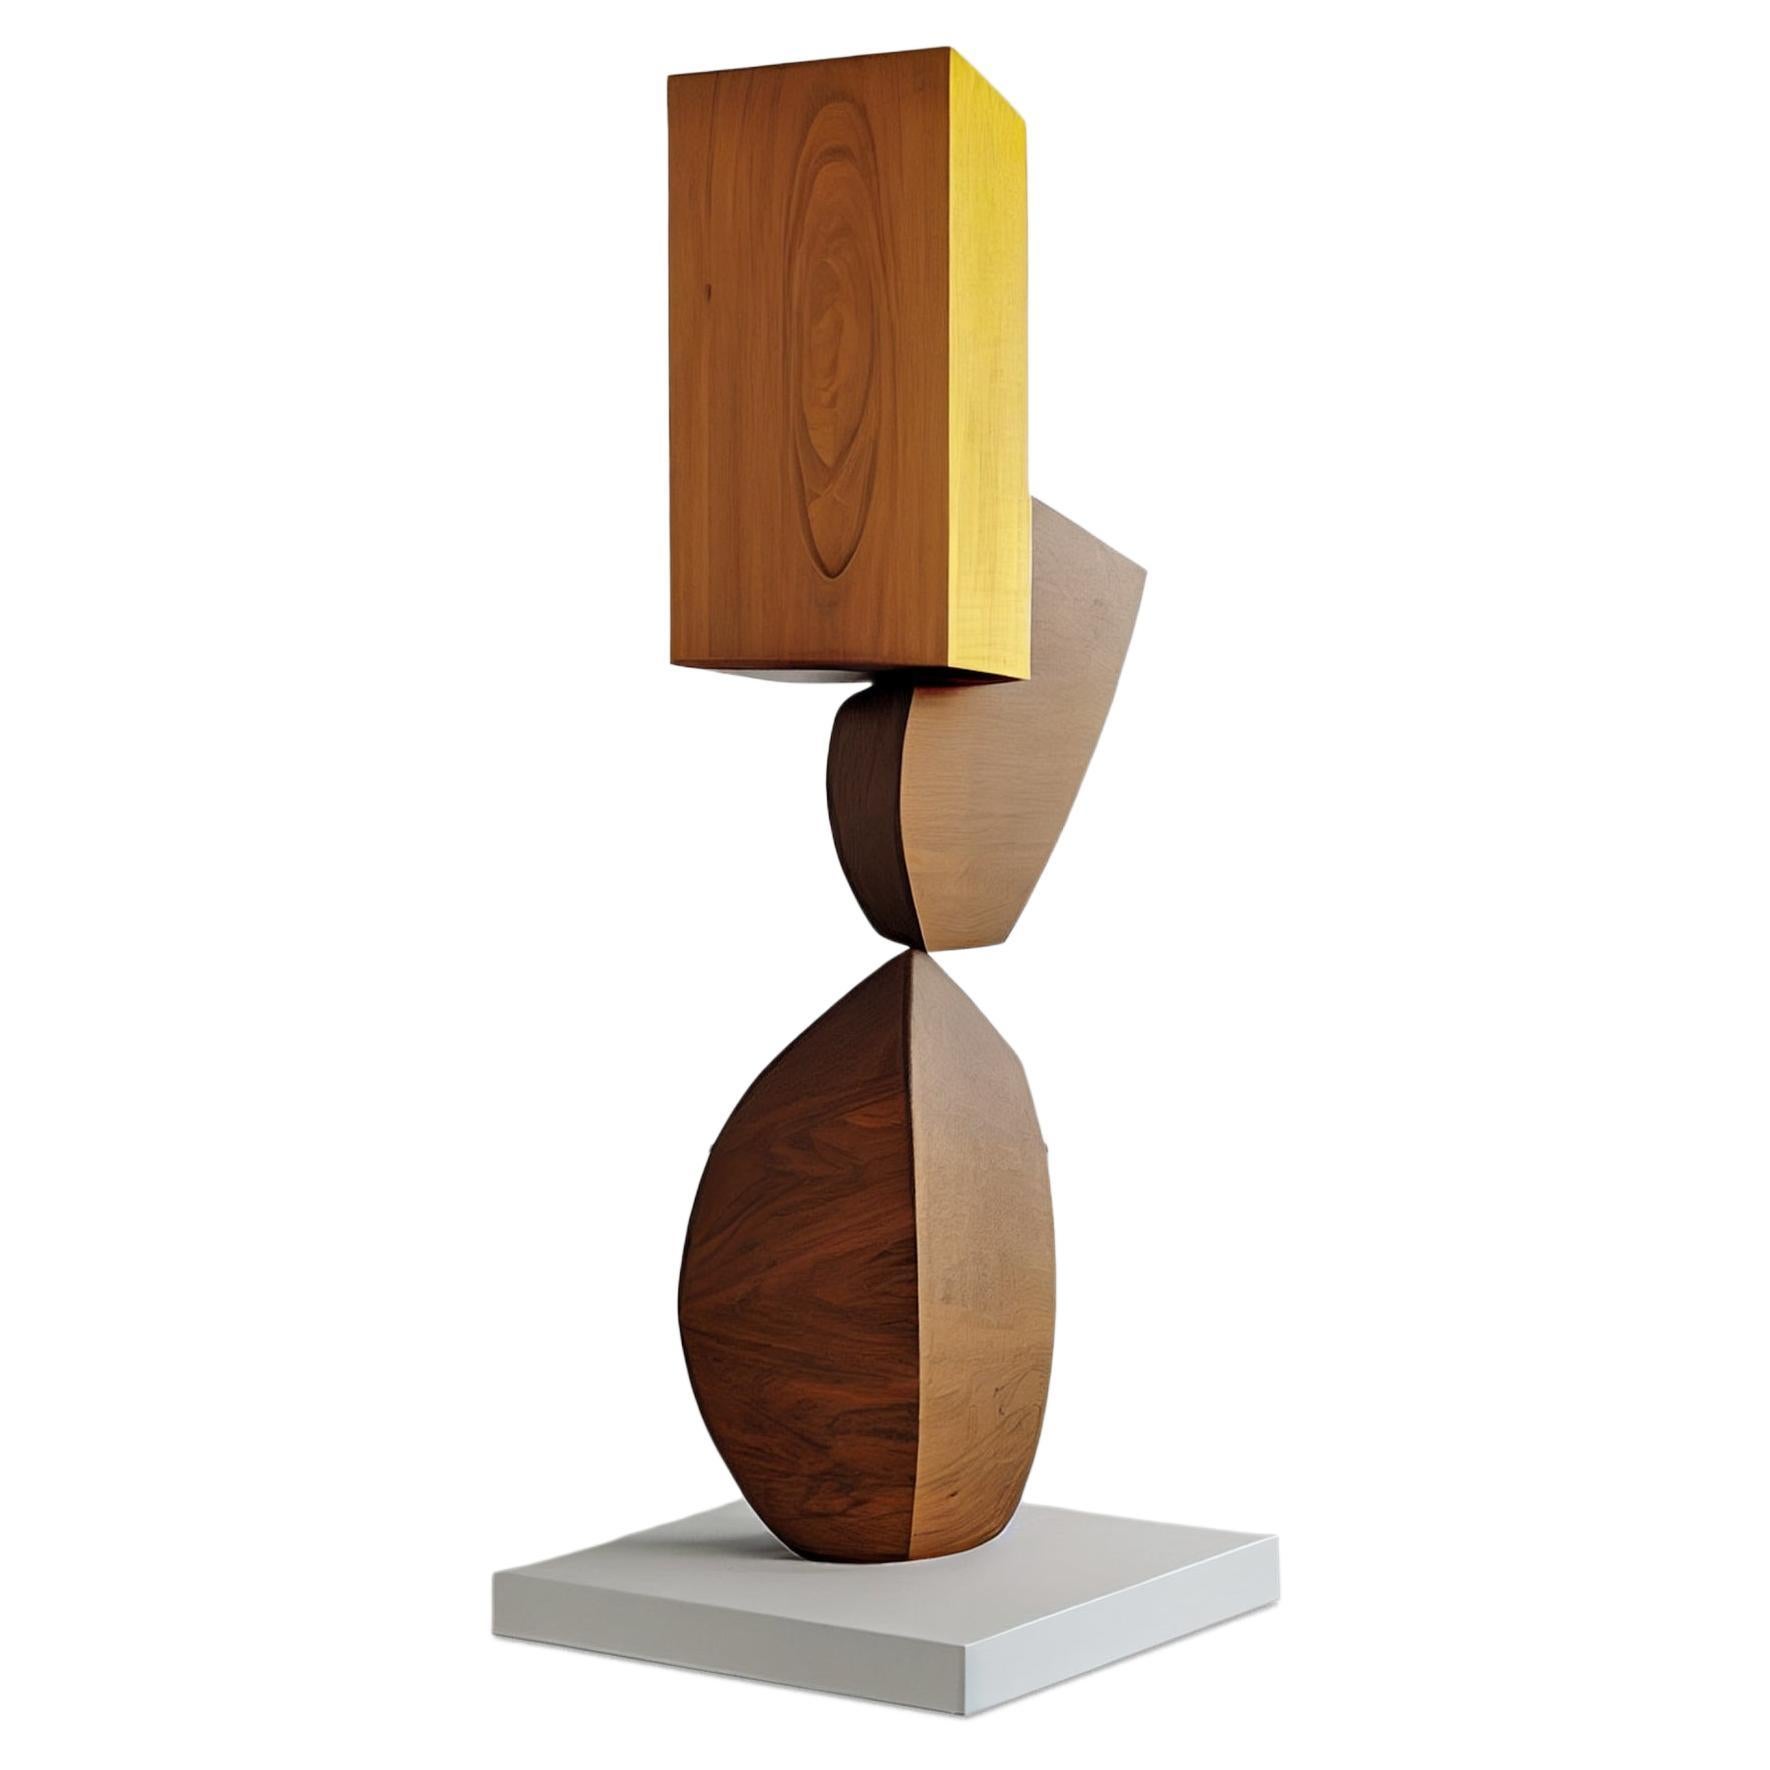 Sculpture biomorphique en bois sculpté, support continu n°6 de Joel Escalona